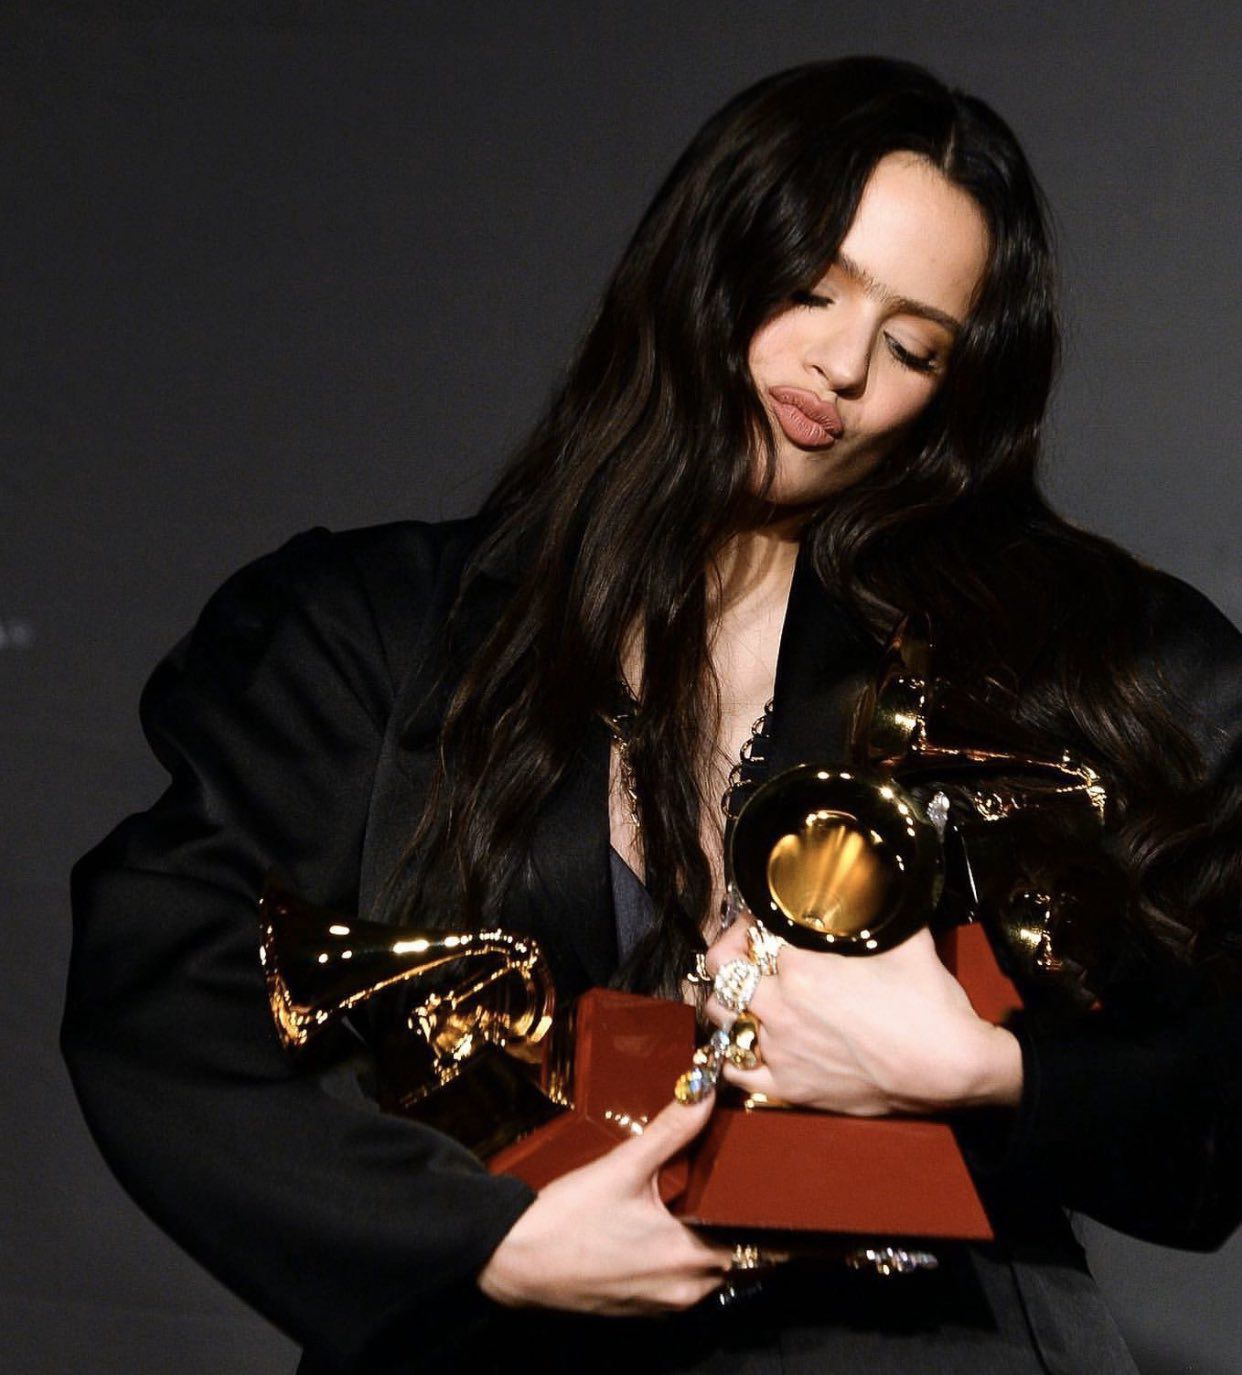 15 de noviembre: el huracán Rosalía siguió haciendo de las suyas en 2019 y finalizaba el año con 5 premios Grammy Latinos, entre ellos al mejor disco por su álbum 'El mal querer'